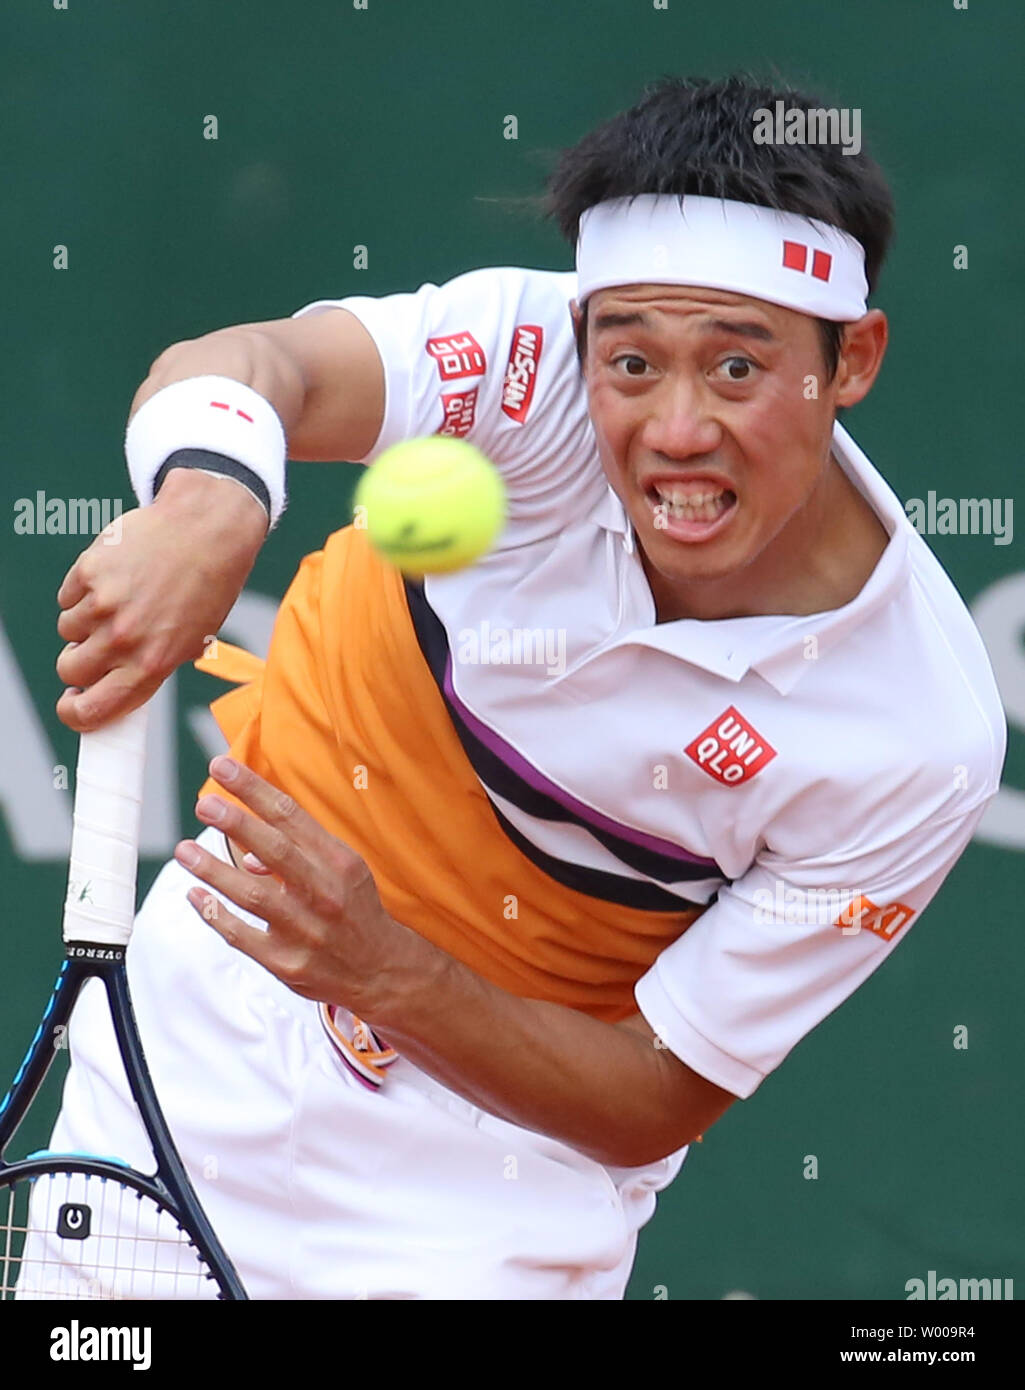 Kei Nishikori du Japon hits un servir lors de son Open de France men's troisième match contre Laslo Djere de Serbie à Roland Garros à Paris le 31 mai 2019. Djere Nishikori a battu 6-4, 7-6 (6), 6-3, 4-6, 8-6) pour passer à la quatrième ronde. Photo de David Silpa/UPI Banque D'Images